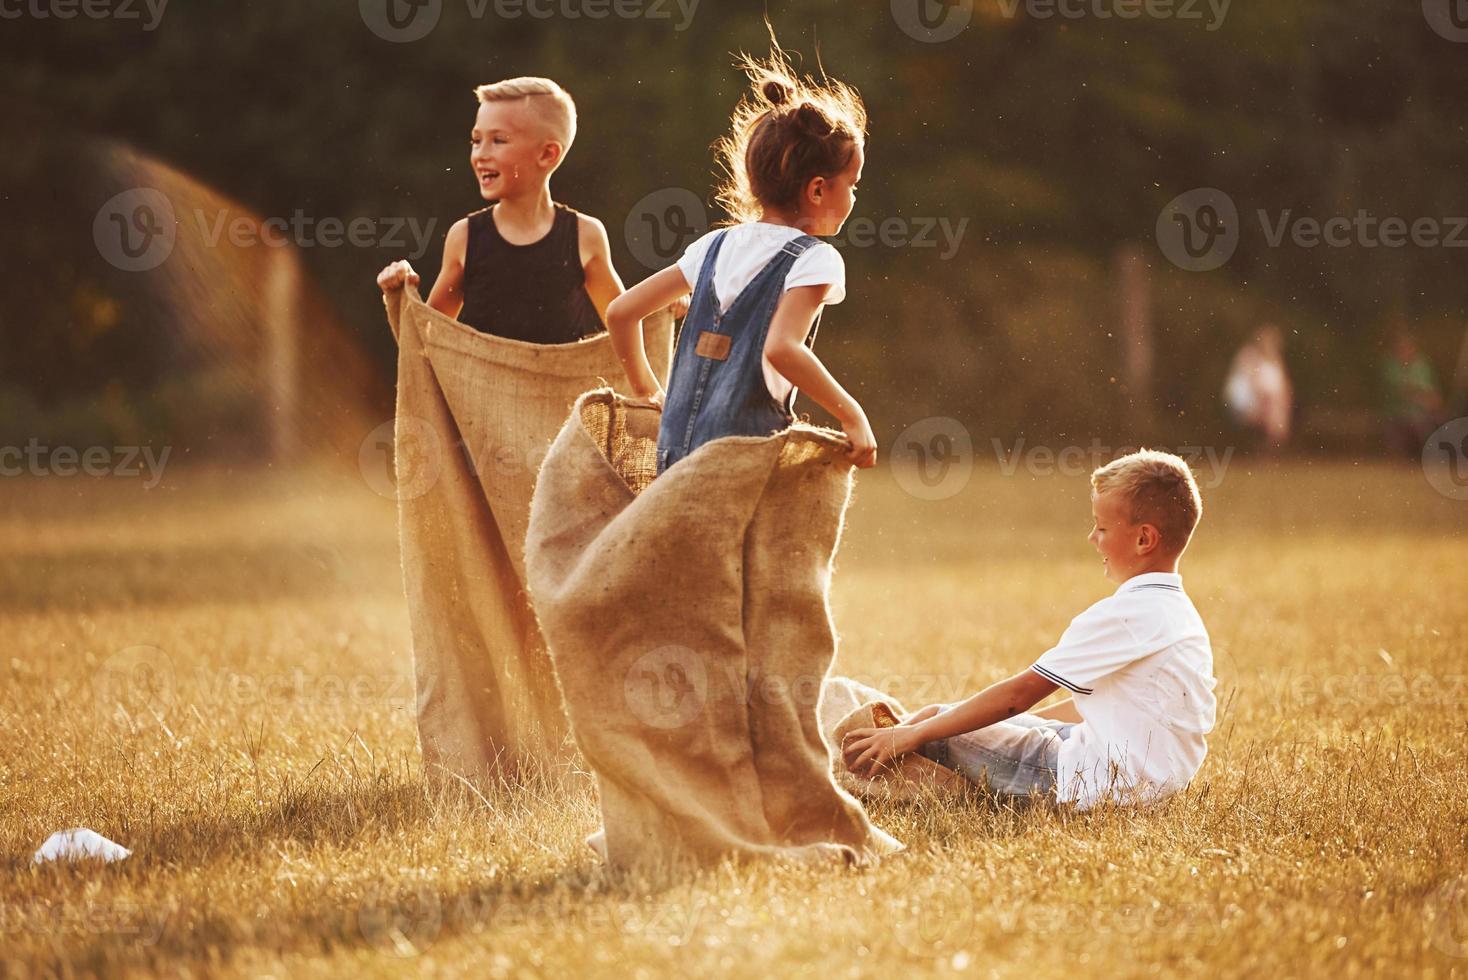 pulando a corrida de saco ao ar livre no campo. as crianças se divertem no dia ensolarado foto